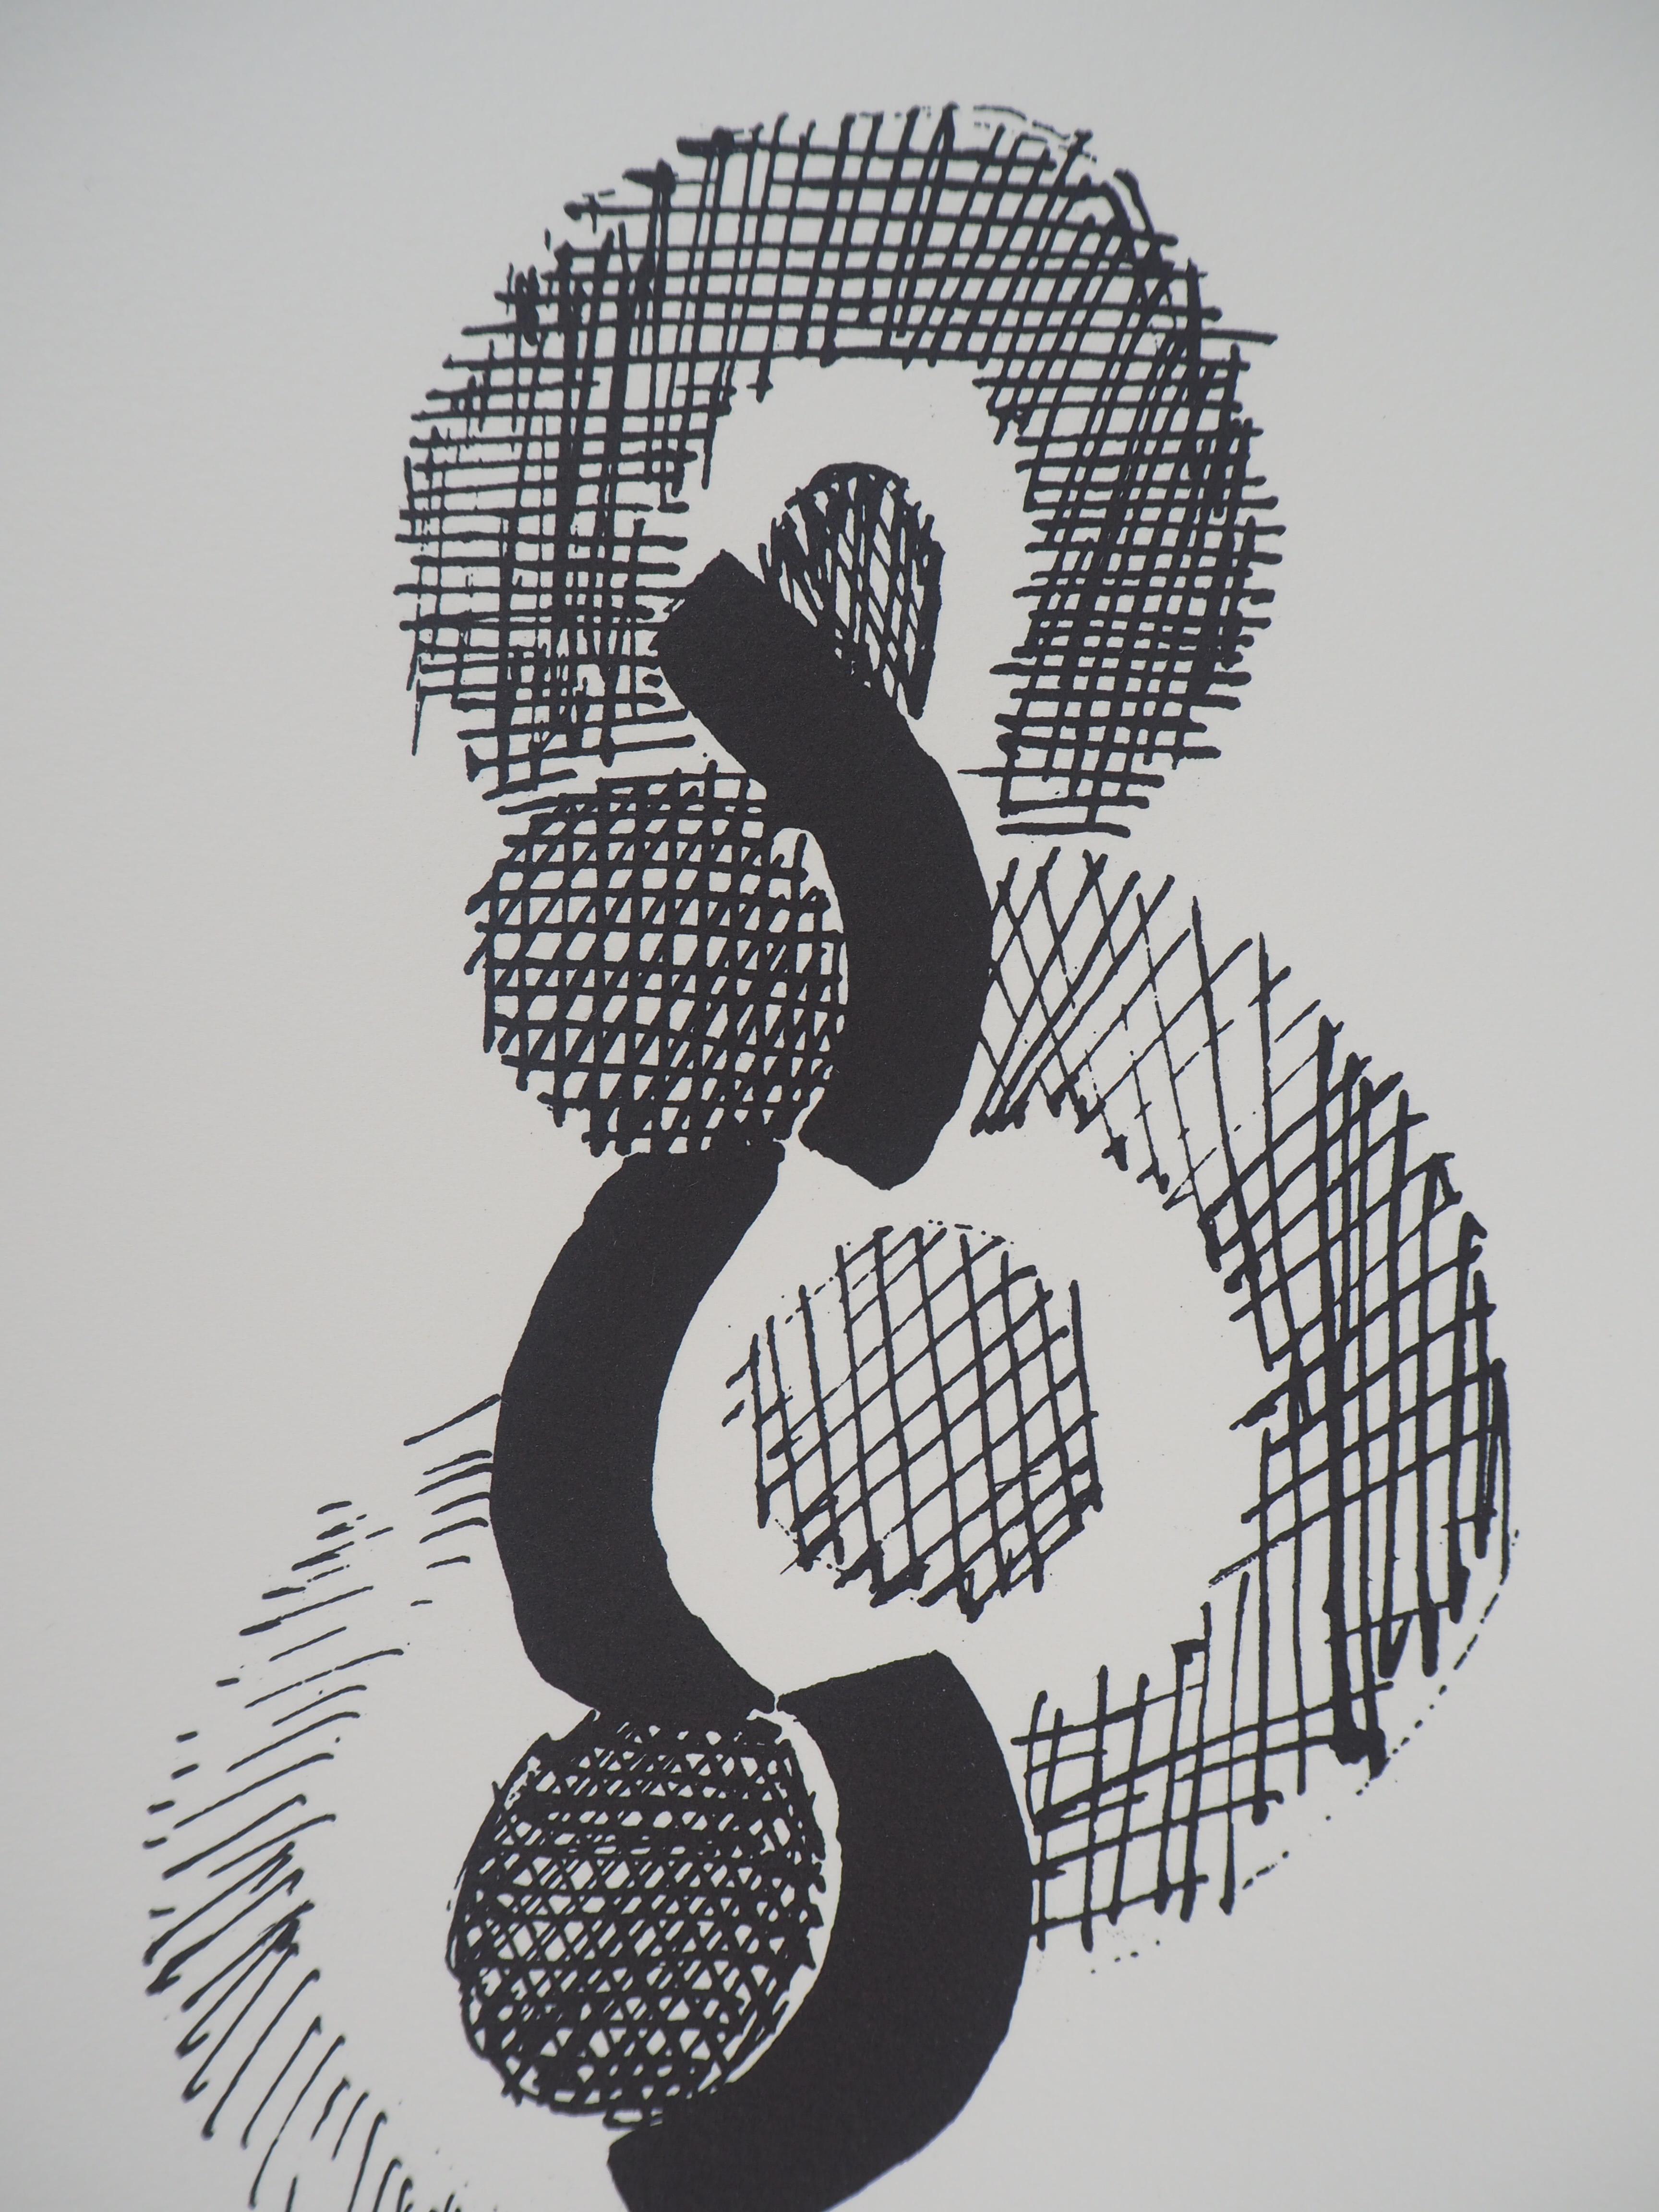 Sonia DELAUNAY
Danse, Rythme sans fin, 1923

Lithographie originale 
Signature imprimée dans la plaque
Numéroté /600 
Sur papier vélin 40 x 30 cm (c. 15.7 x 11.8 in)
Edition ArtCurial 

Excellent état